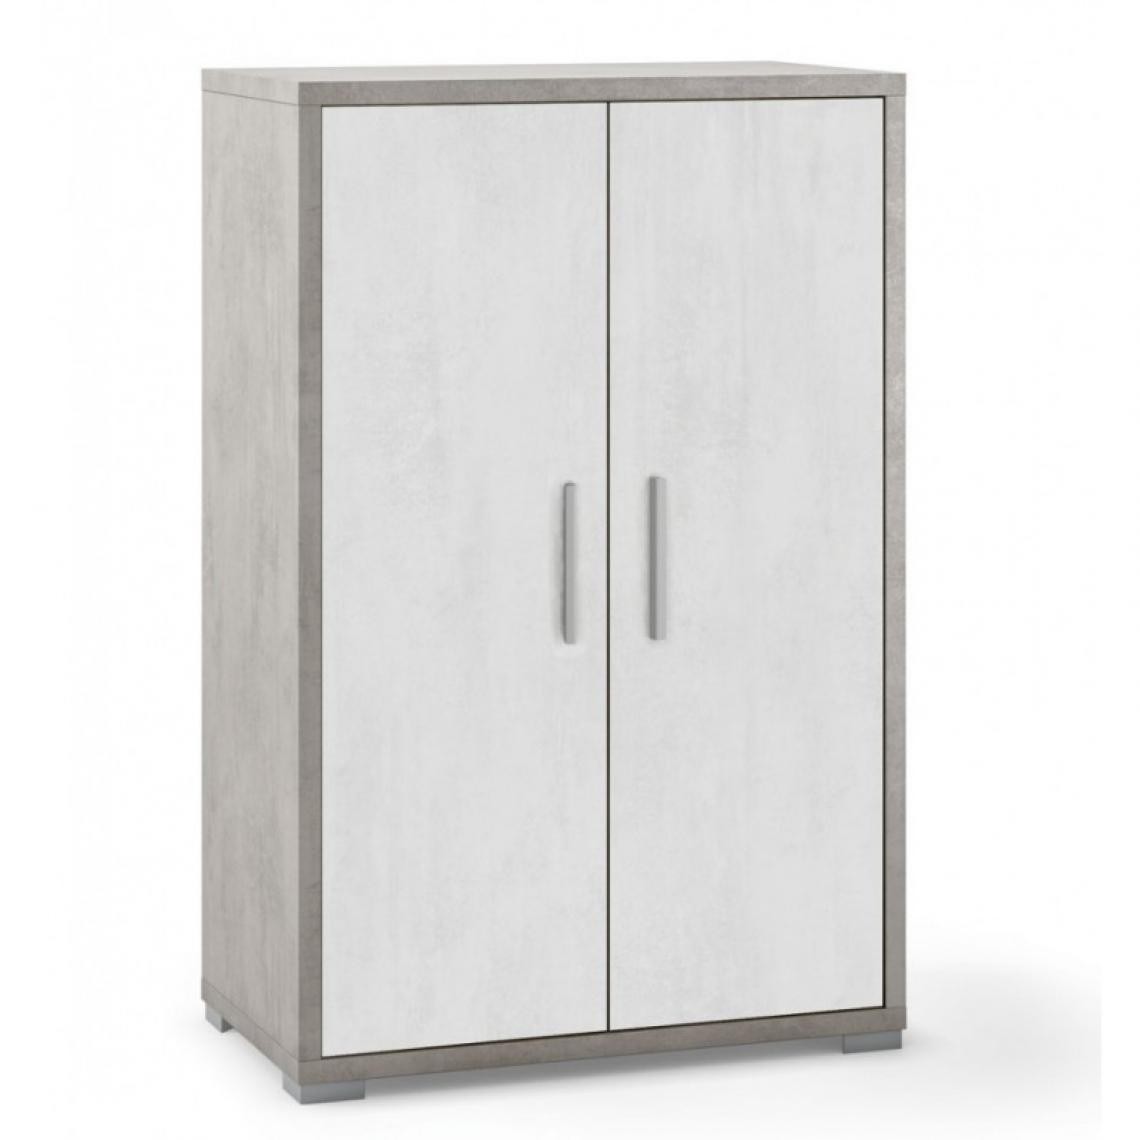 Webmarketpoint - Armoire polyvalente à deux portes Ciment Blanc 71x41x h110 cm - Bureaux